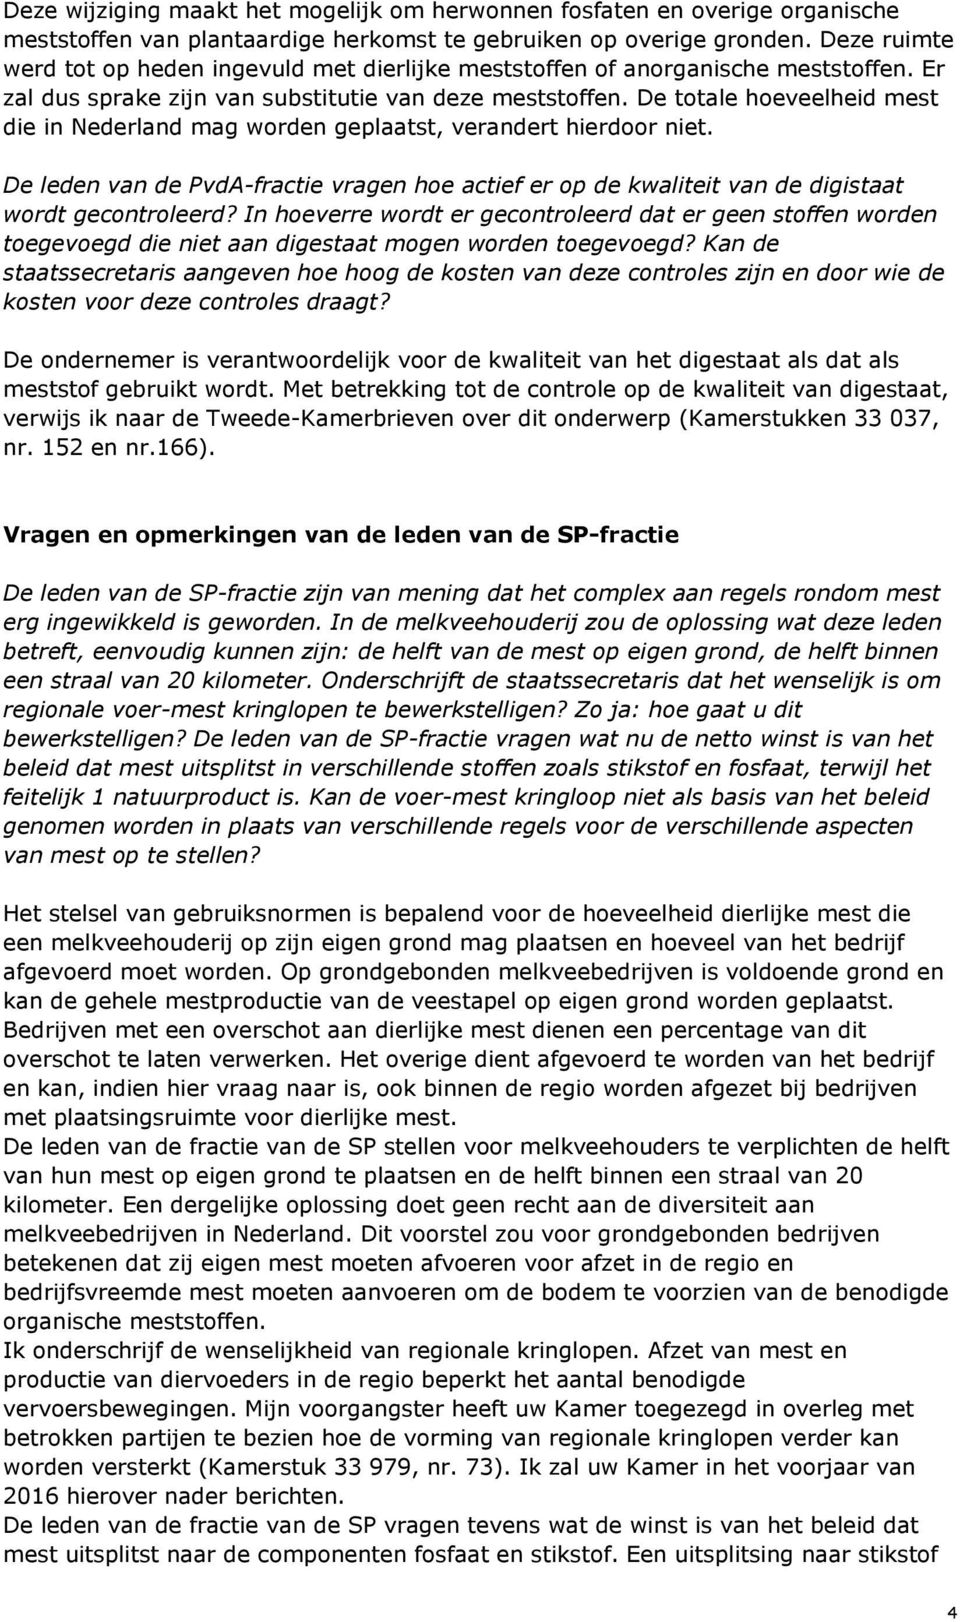 De totale hoeveelheid mest die in Nederland mag worden geplaatst, verandert hierdoor niet. De leden van de PvdA-fractie vragen hoe actief er op de kwaliteit van de digistaat wordt gecontroleerd?